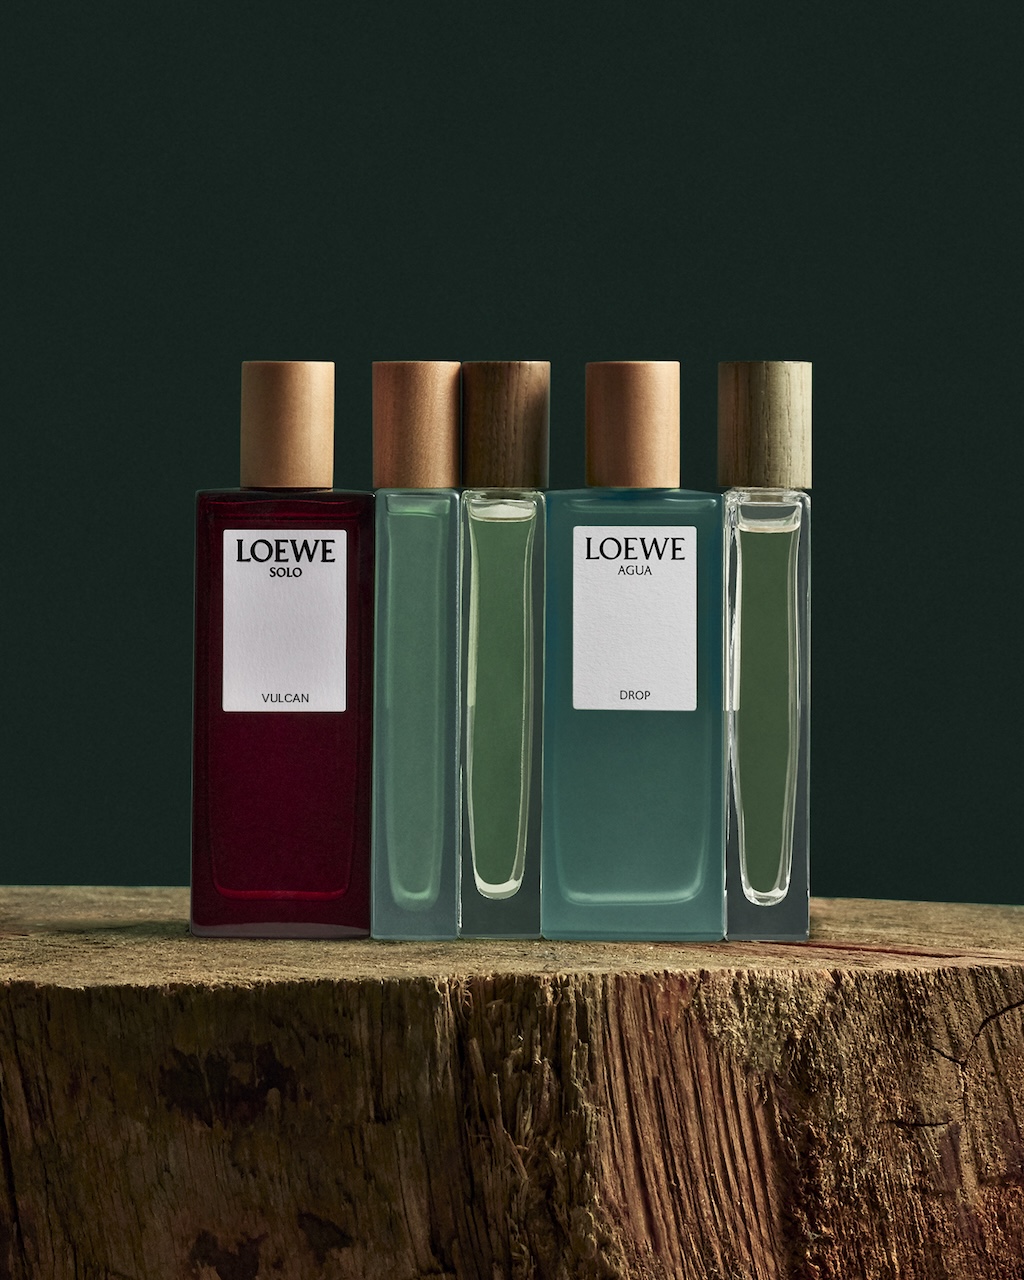 LOEWE Perfumes lanza dos nuevas propuestas: Solo Vulcan y Agua Drop - 25 Gramos | 25 Gramos